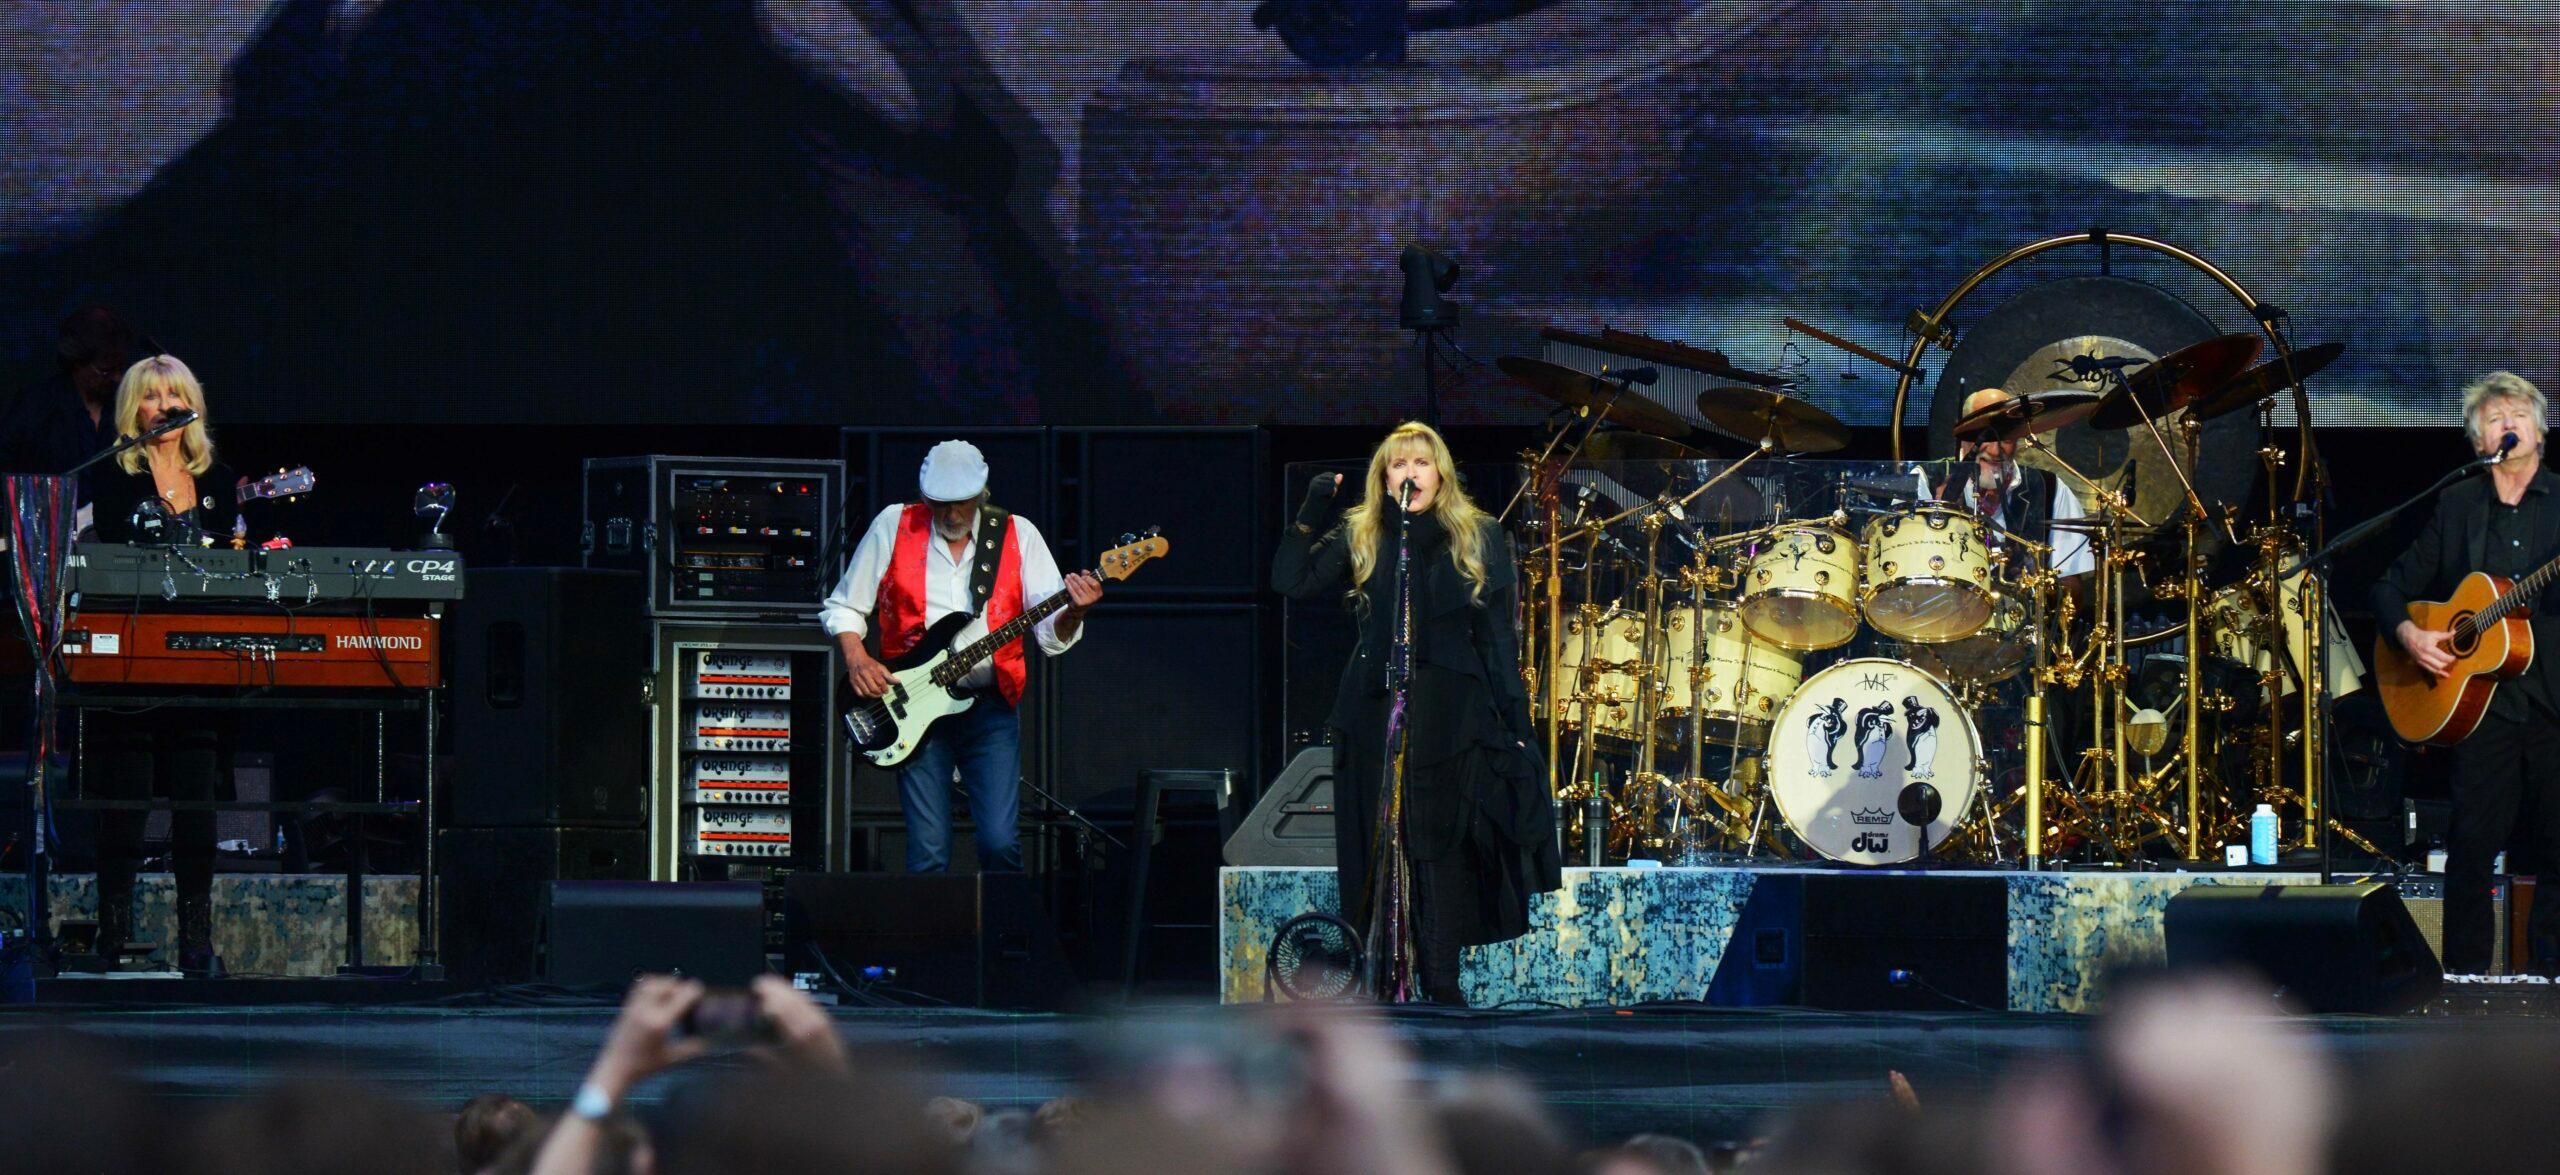 Fleetwood Mac performing live at Wembley Stadium